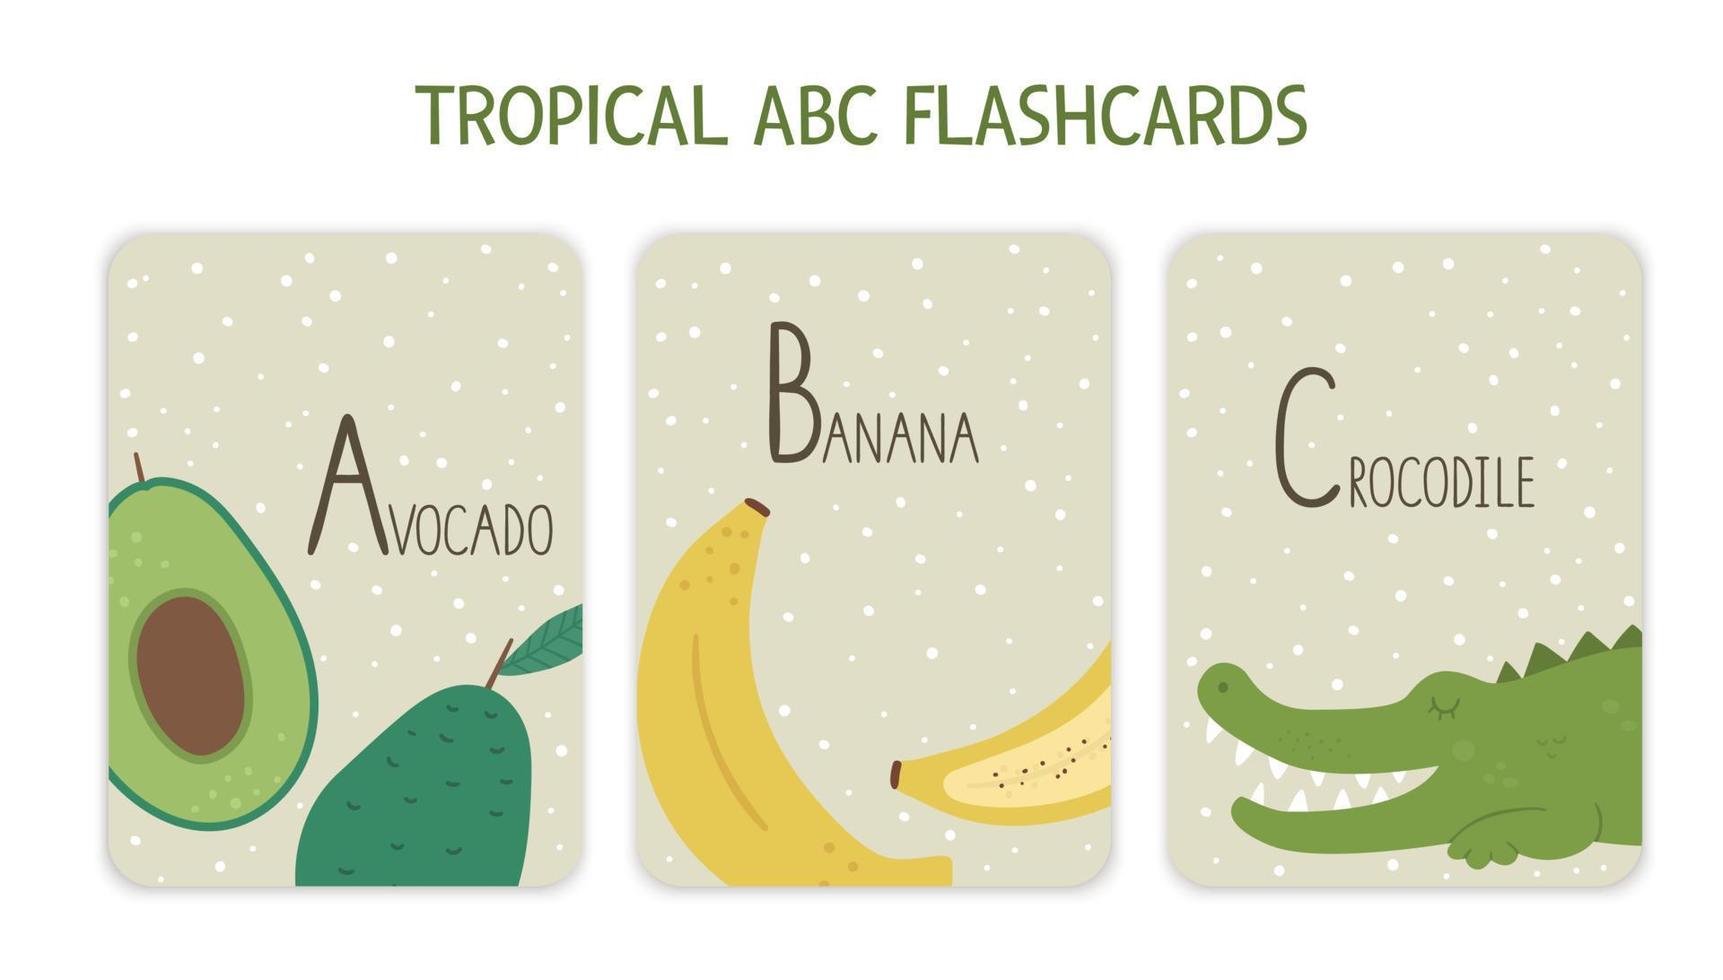 kleurrijke alfabetletters a, b, c. phonics flashcard met tropische dieren, vogels, fruit, planten. schattige educatieve jungle-abc-kaarten voor het leren lezen met grappige avocado, banaan, krokodil. vector